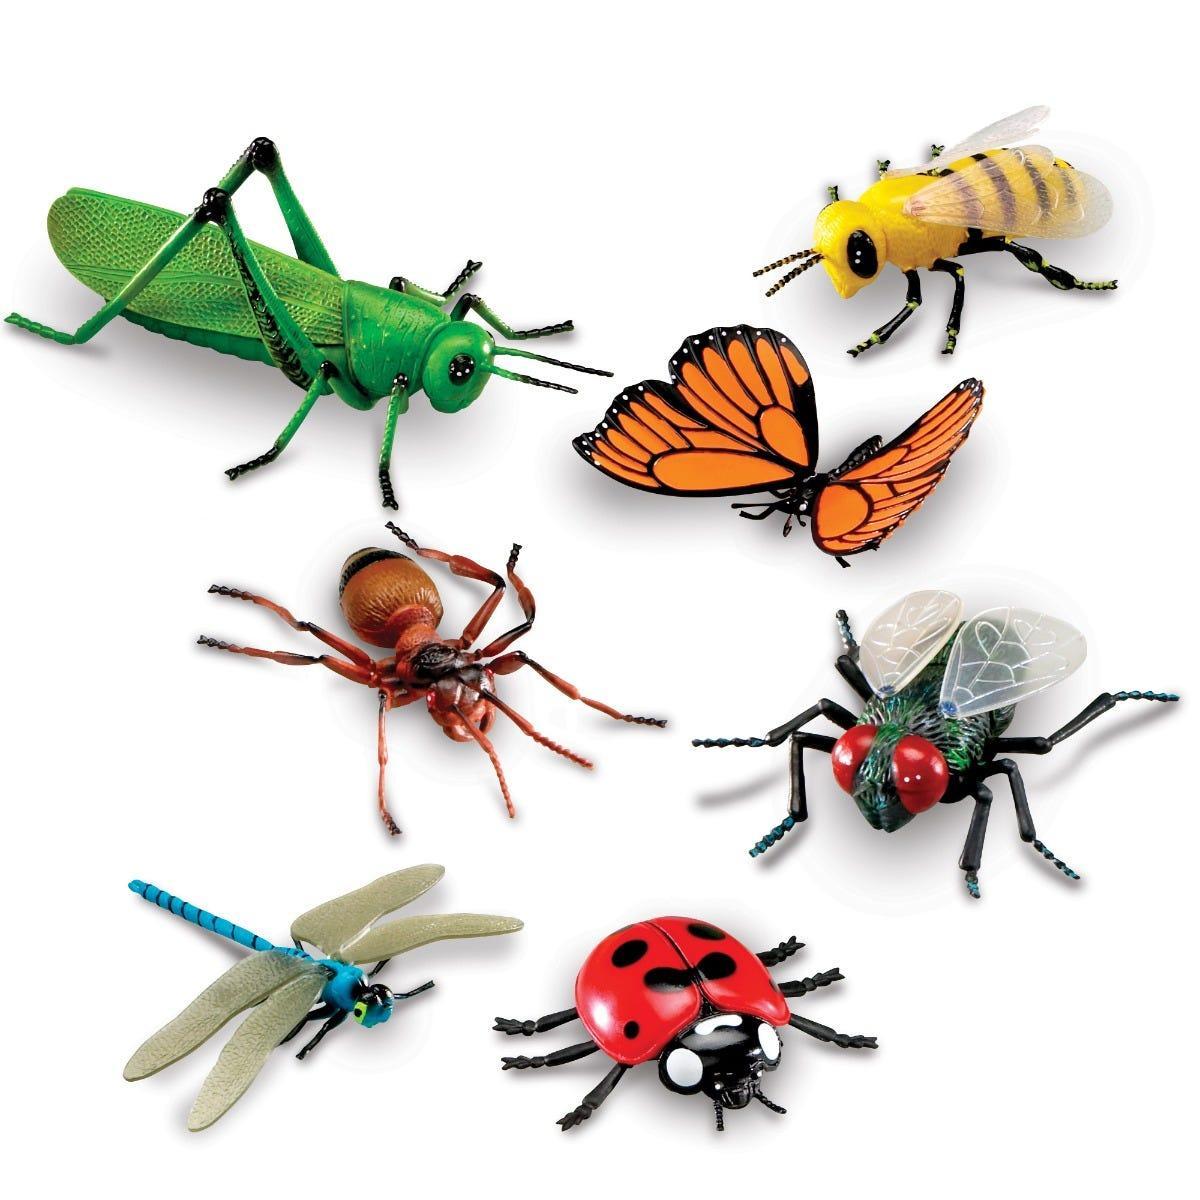 Bộ loài côn trùng - Jumbo Insects